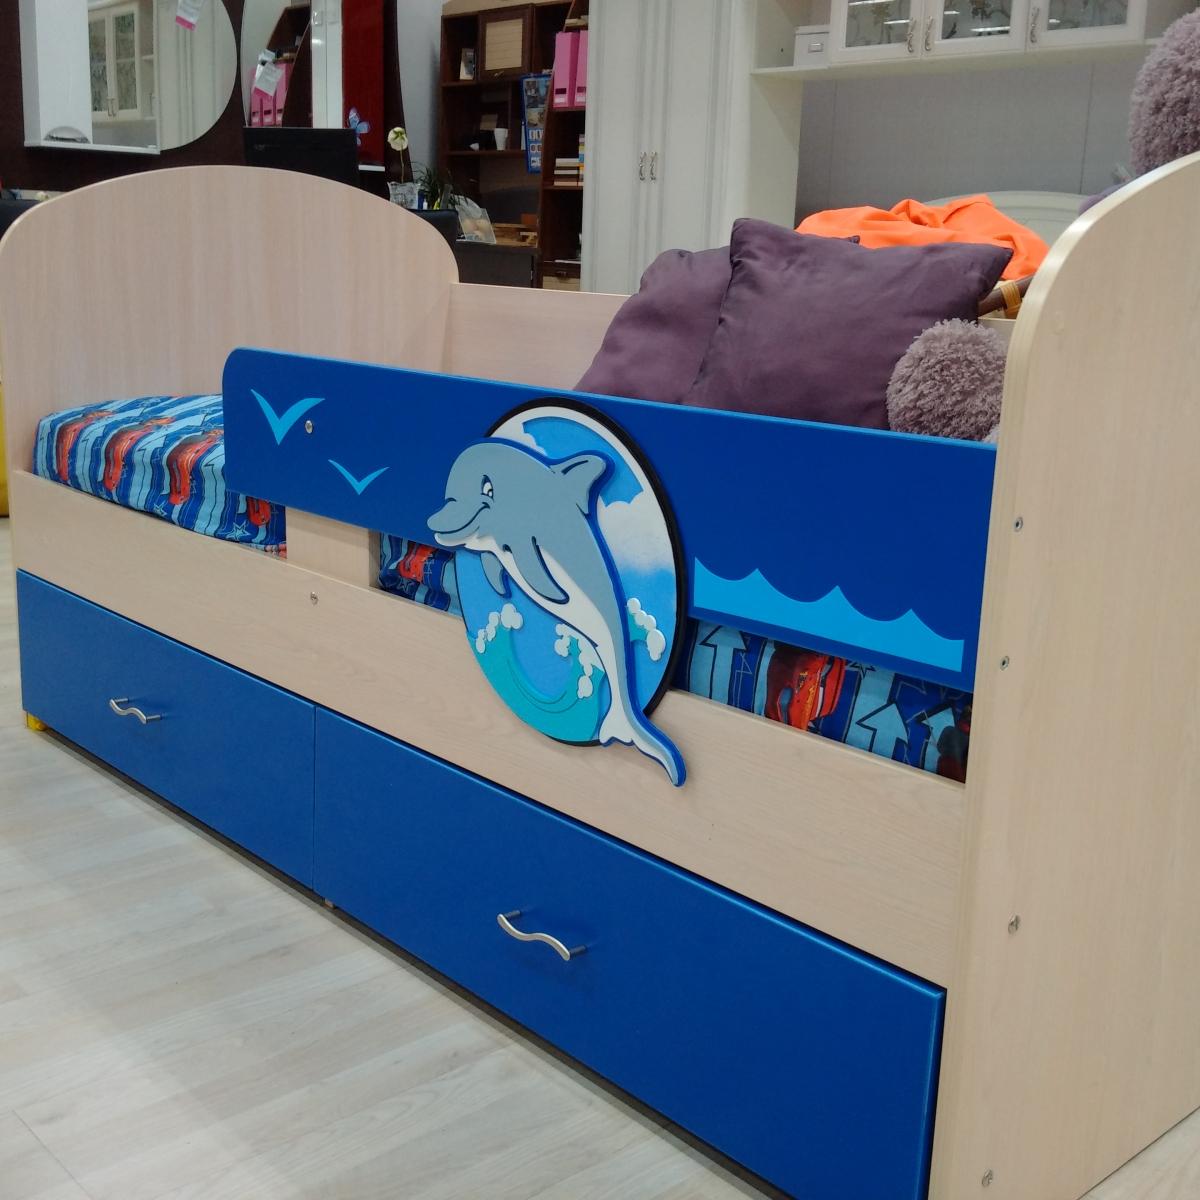 Кровать Дельфин